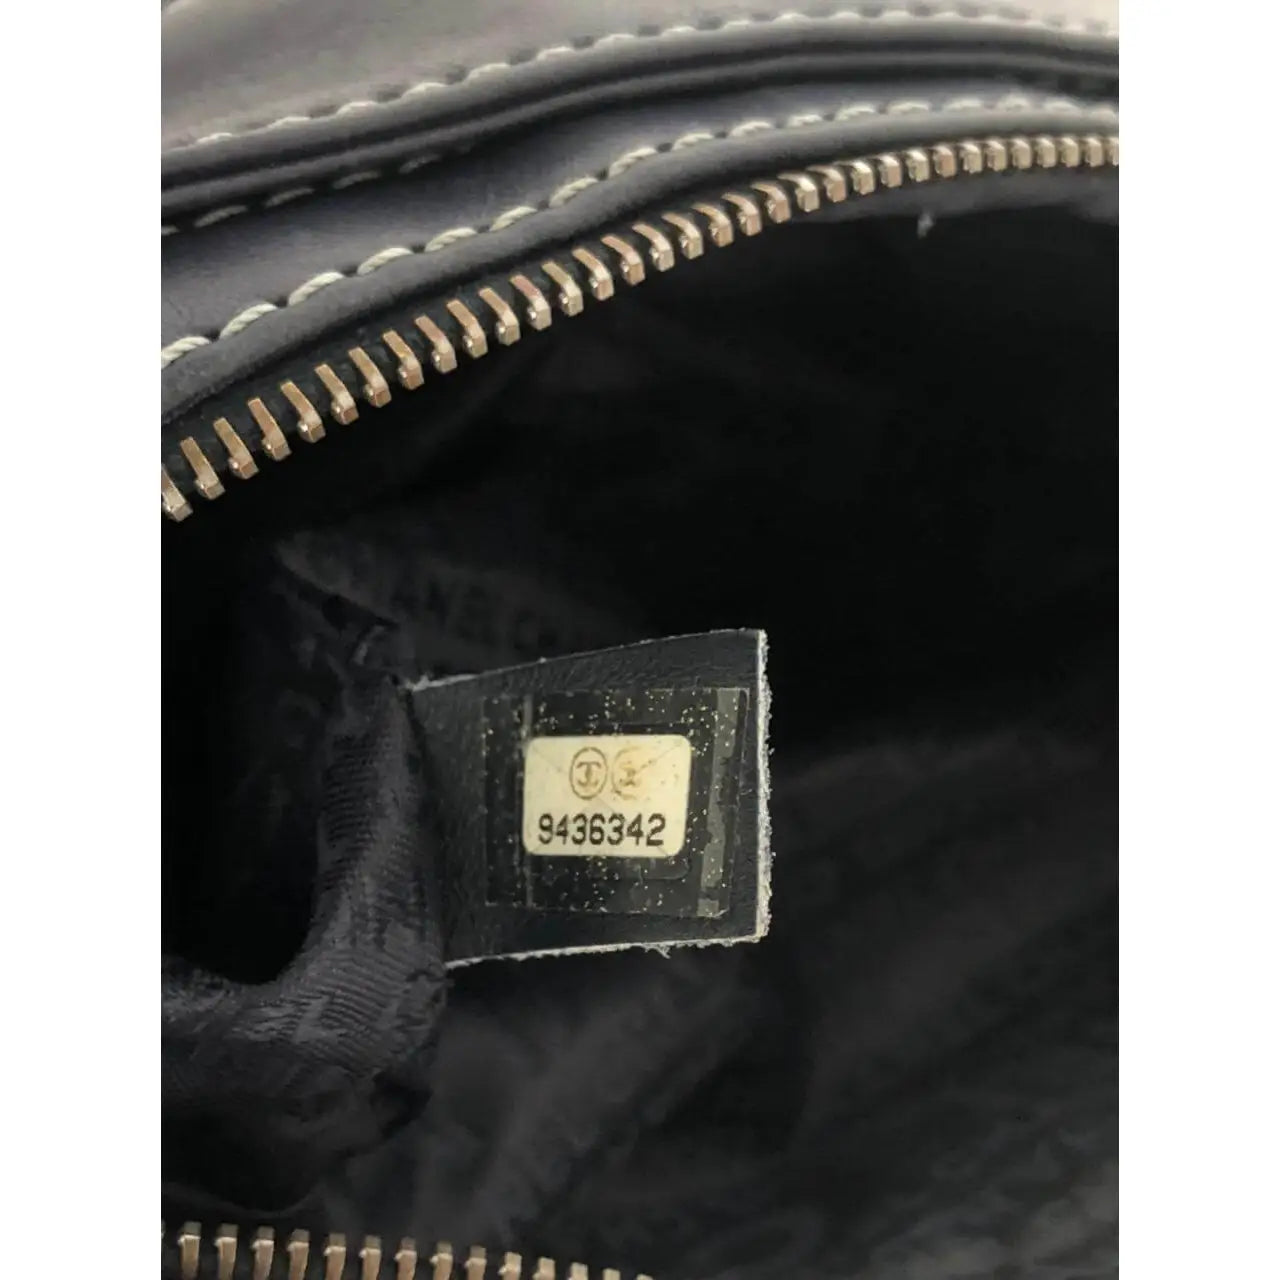 Chanel Accordion Bag - Vintage Counter – Comptoir Vintage